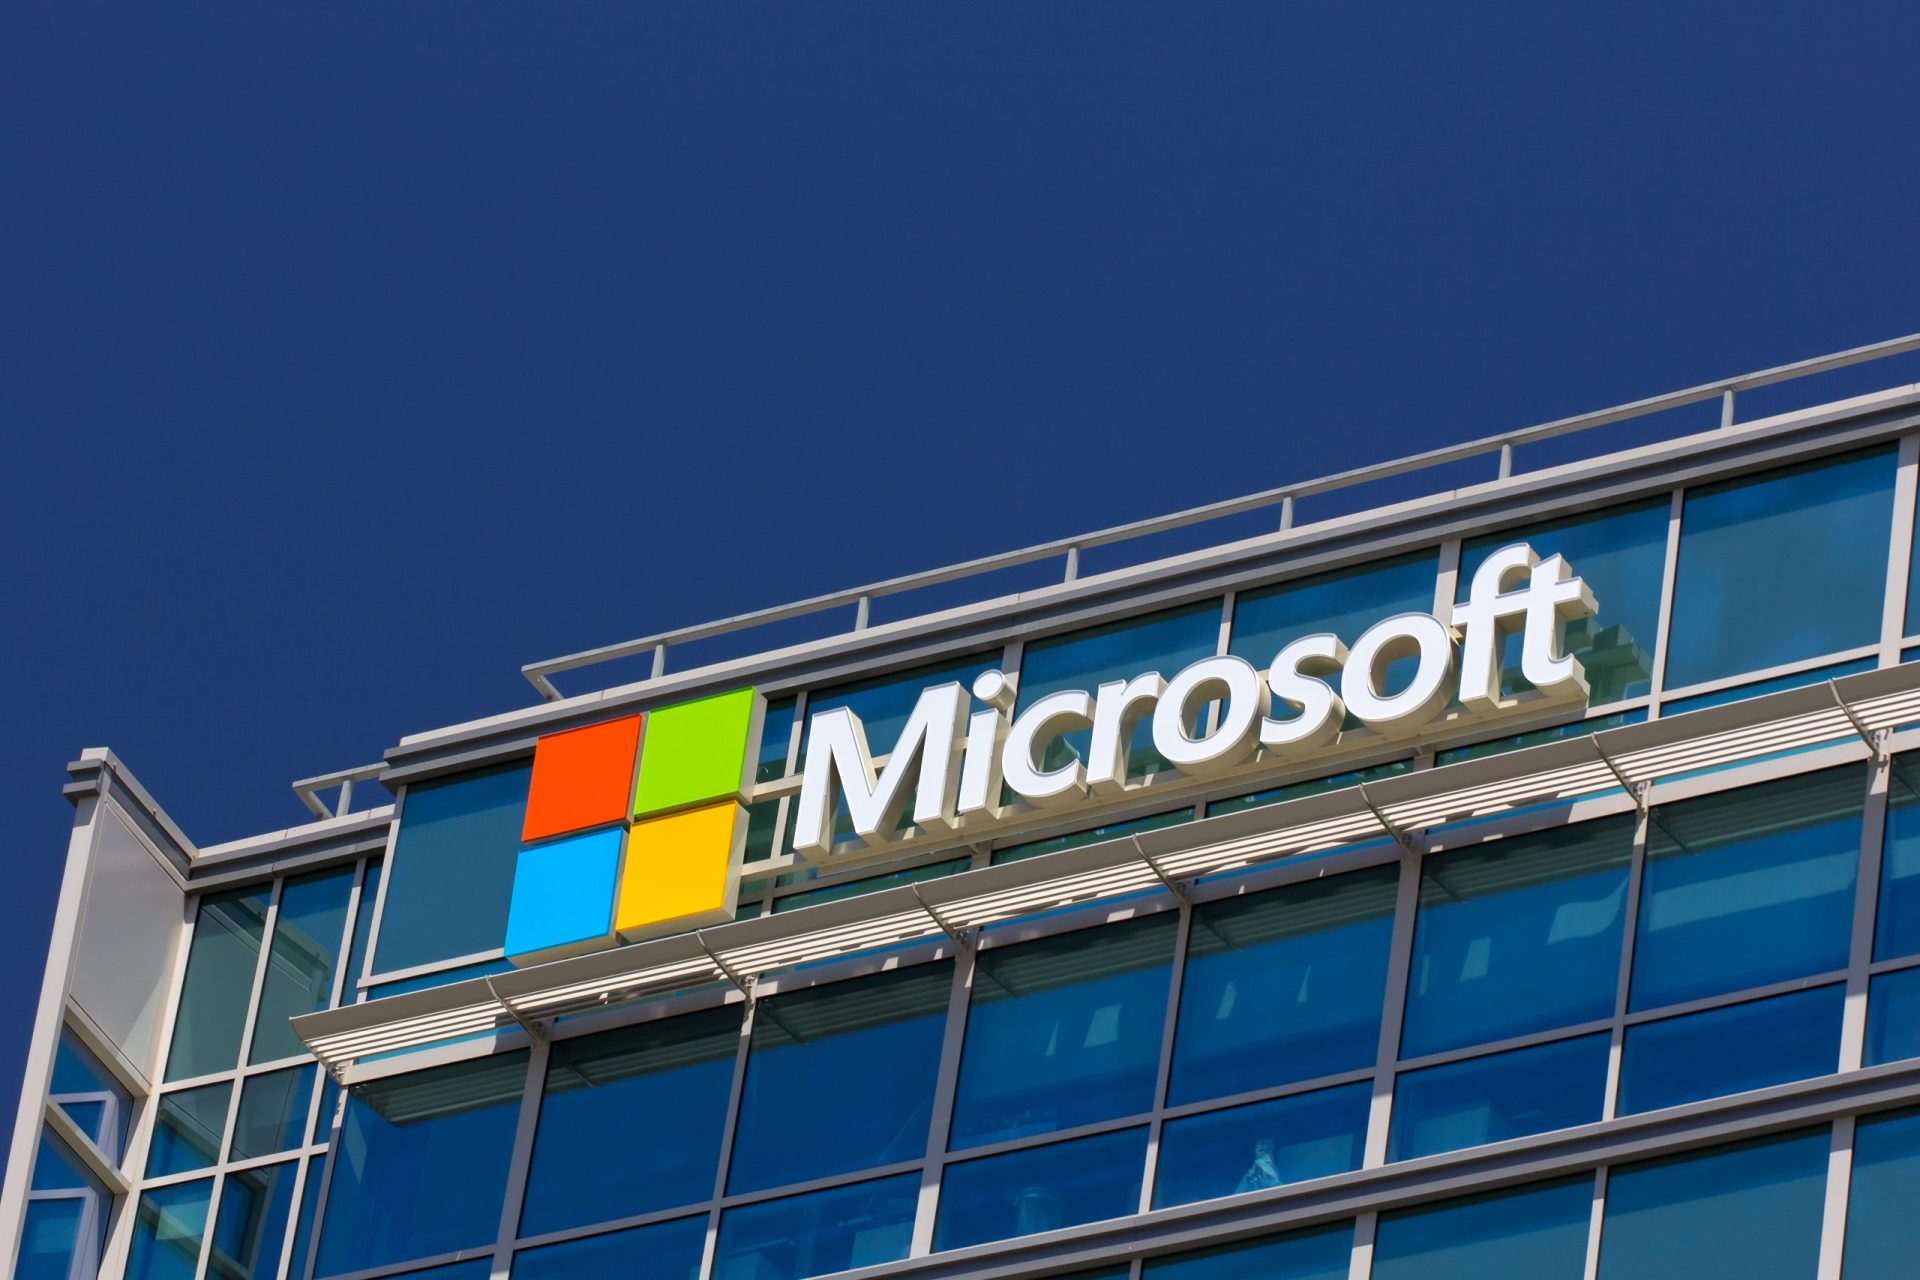 Atenção. Campanha fraudulenta utiliza nome da Microsoft para falsos telefonemas